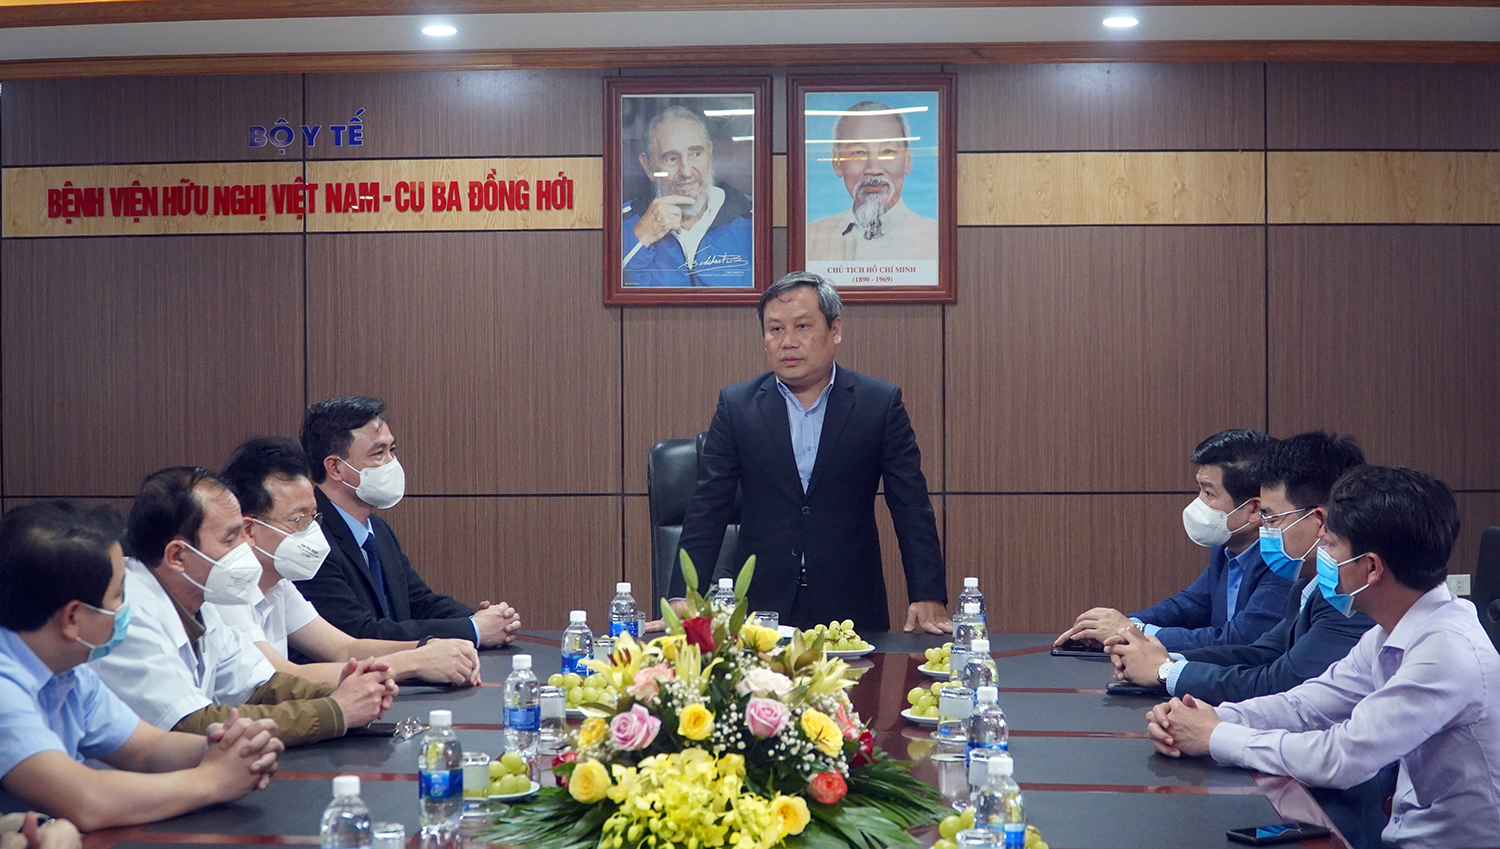 Đồng chí Bí thư Tỉnh ủy chúc mừng Giám đốc Bệnh viện hữu nghị Việt Nam-Cuba Đồng Hới